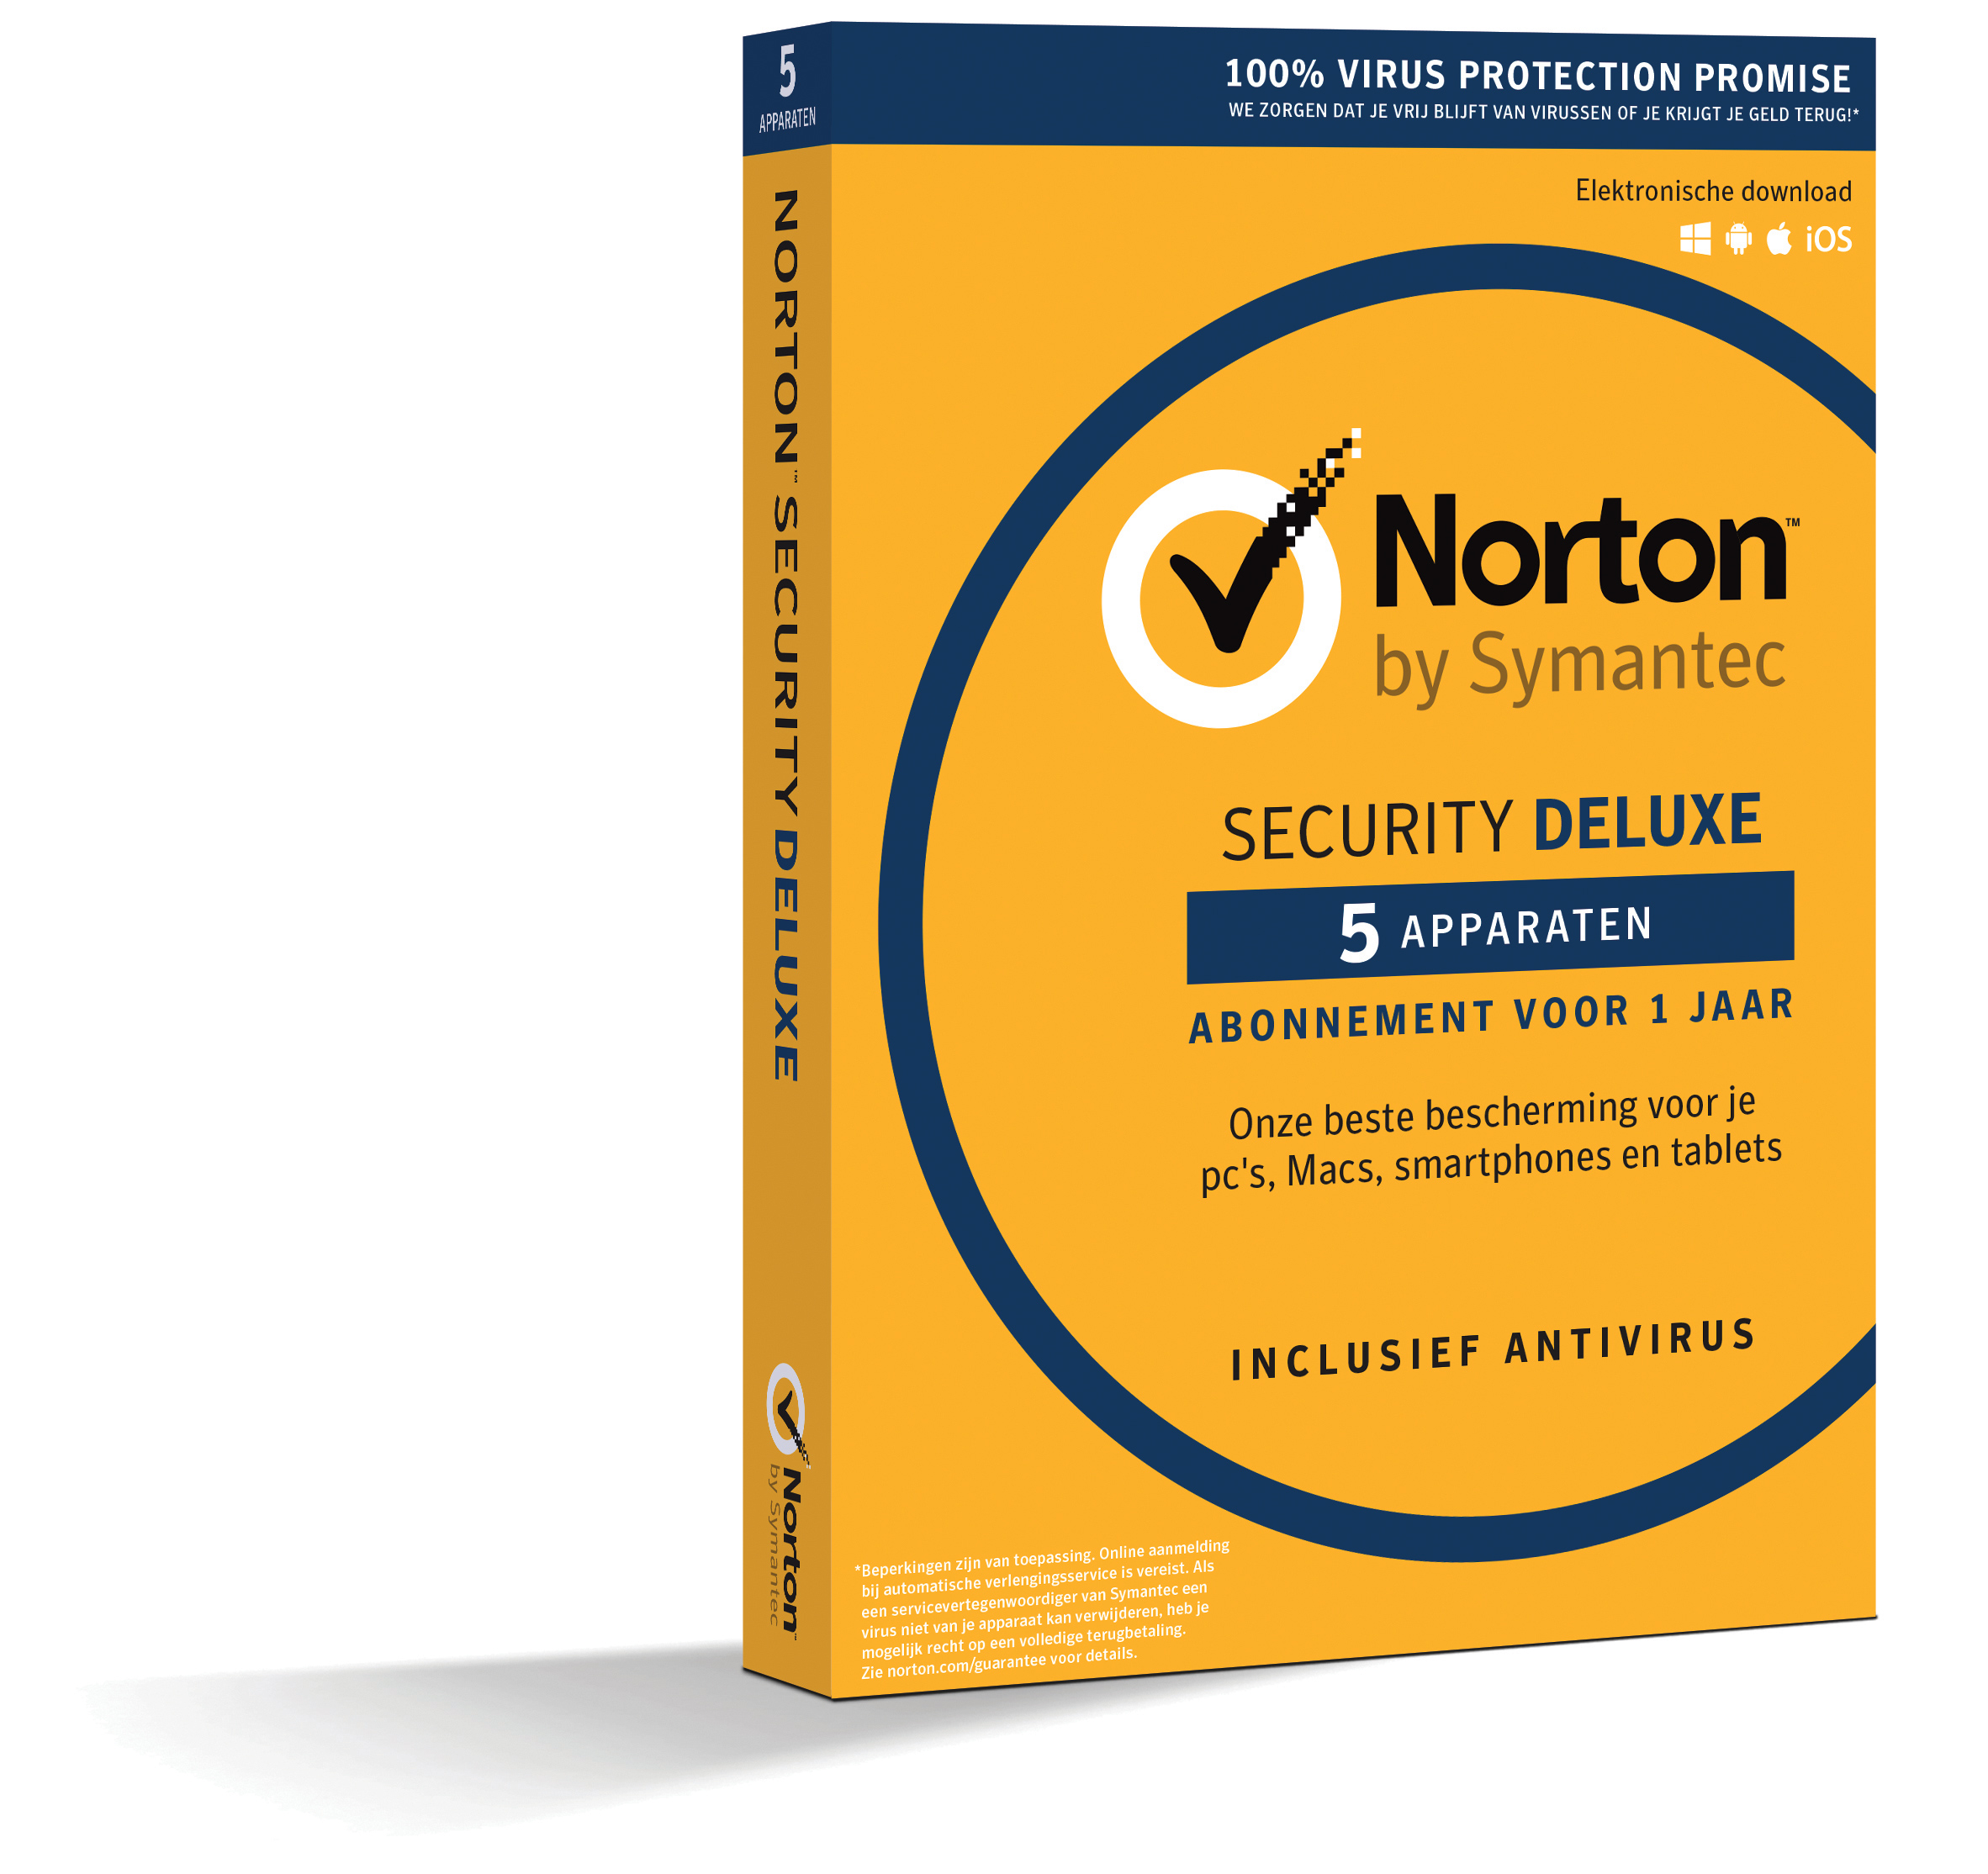 Norton Security Deluxe 5-Apparaten 1jaar 2020 - Antivirus inbegrepen - Windows | Mac | Android | iOs